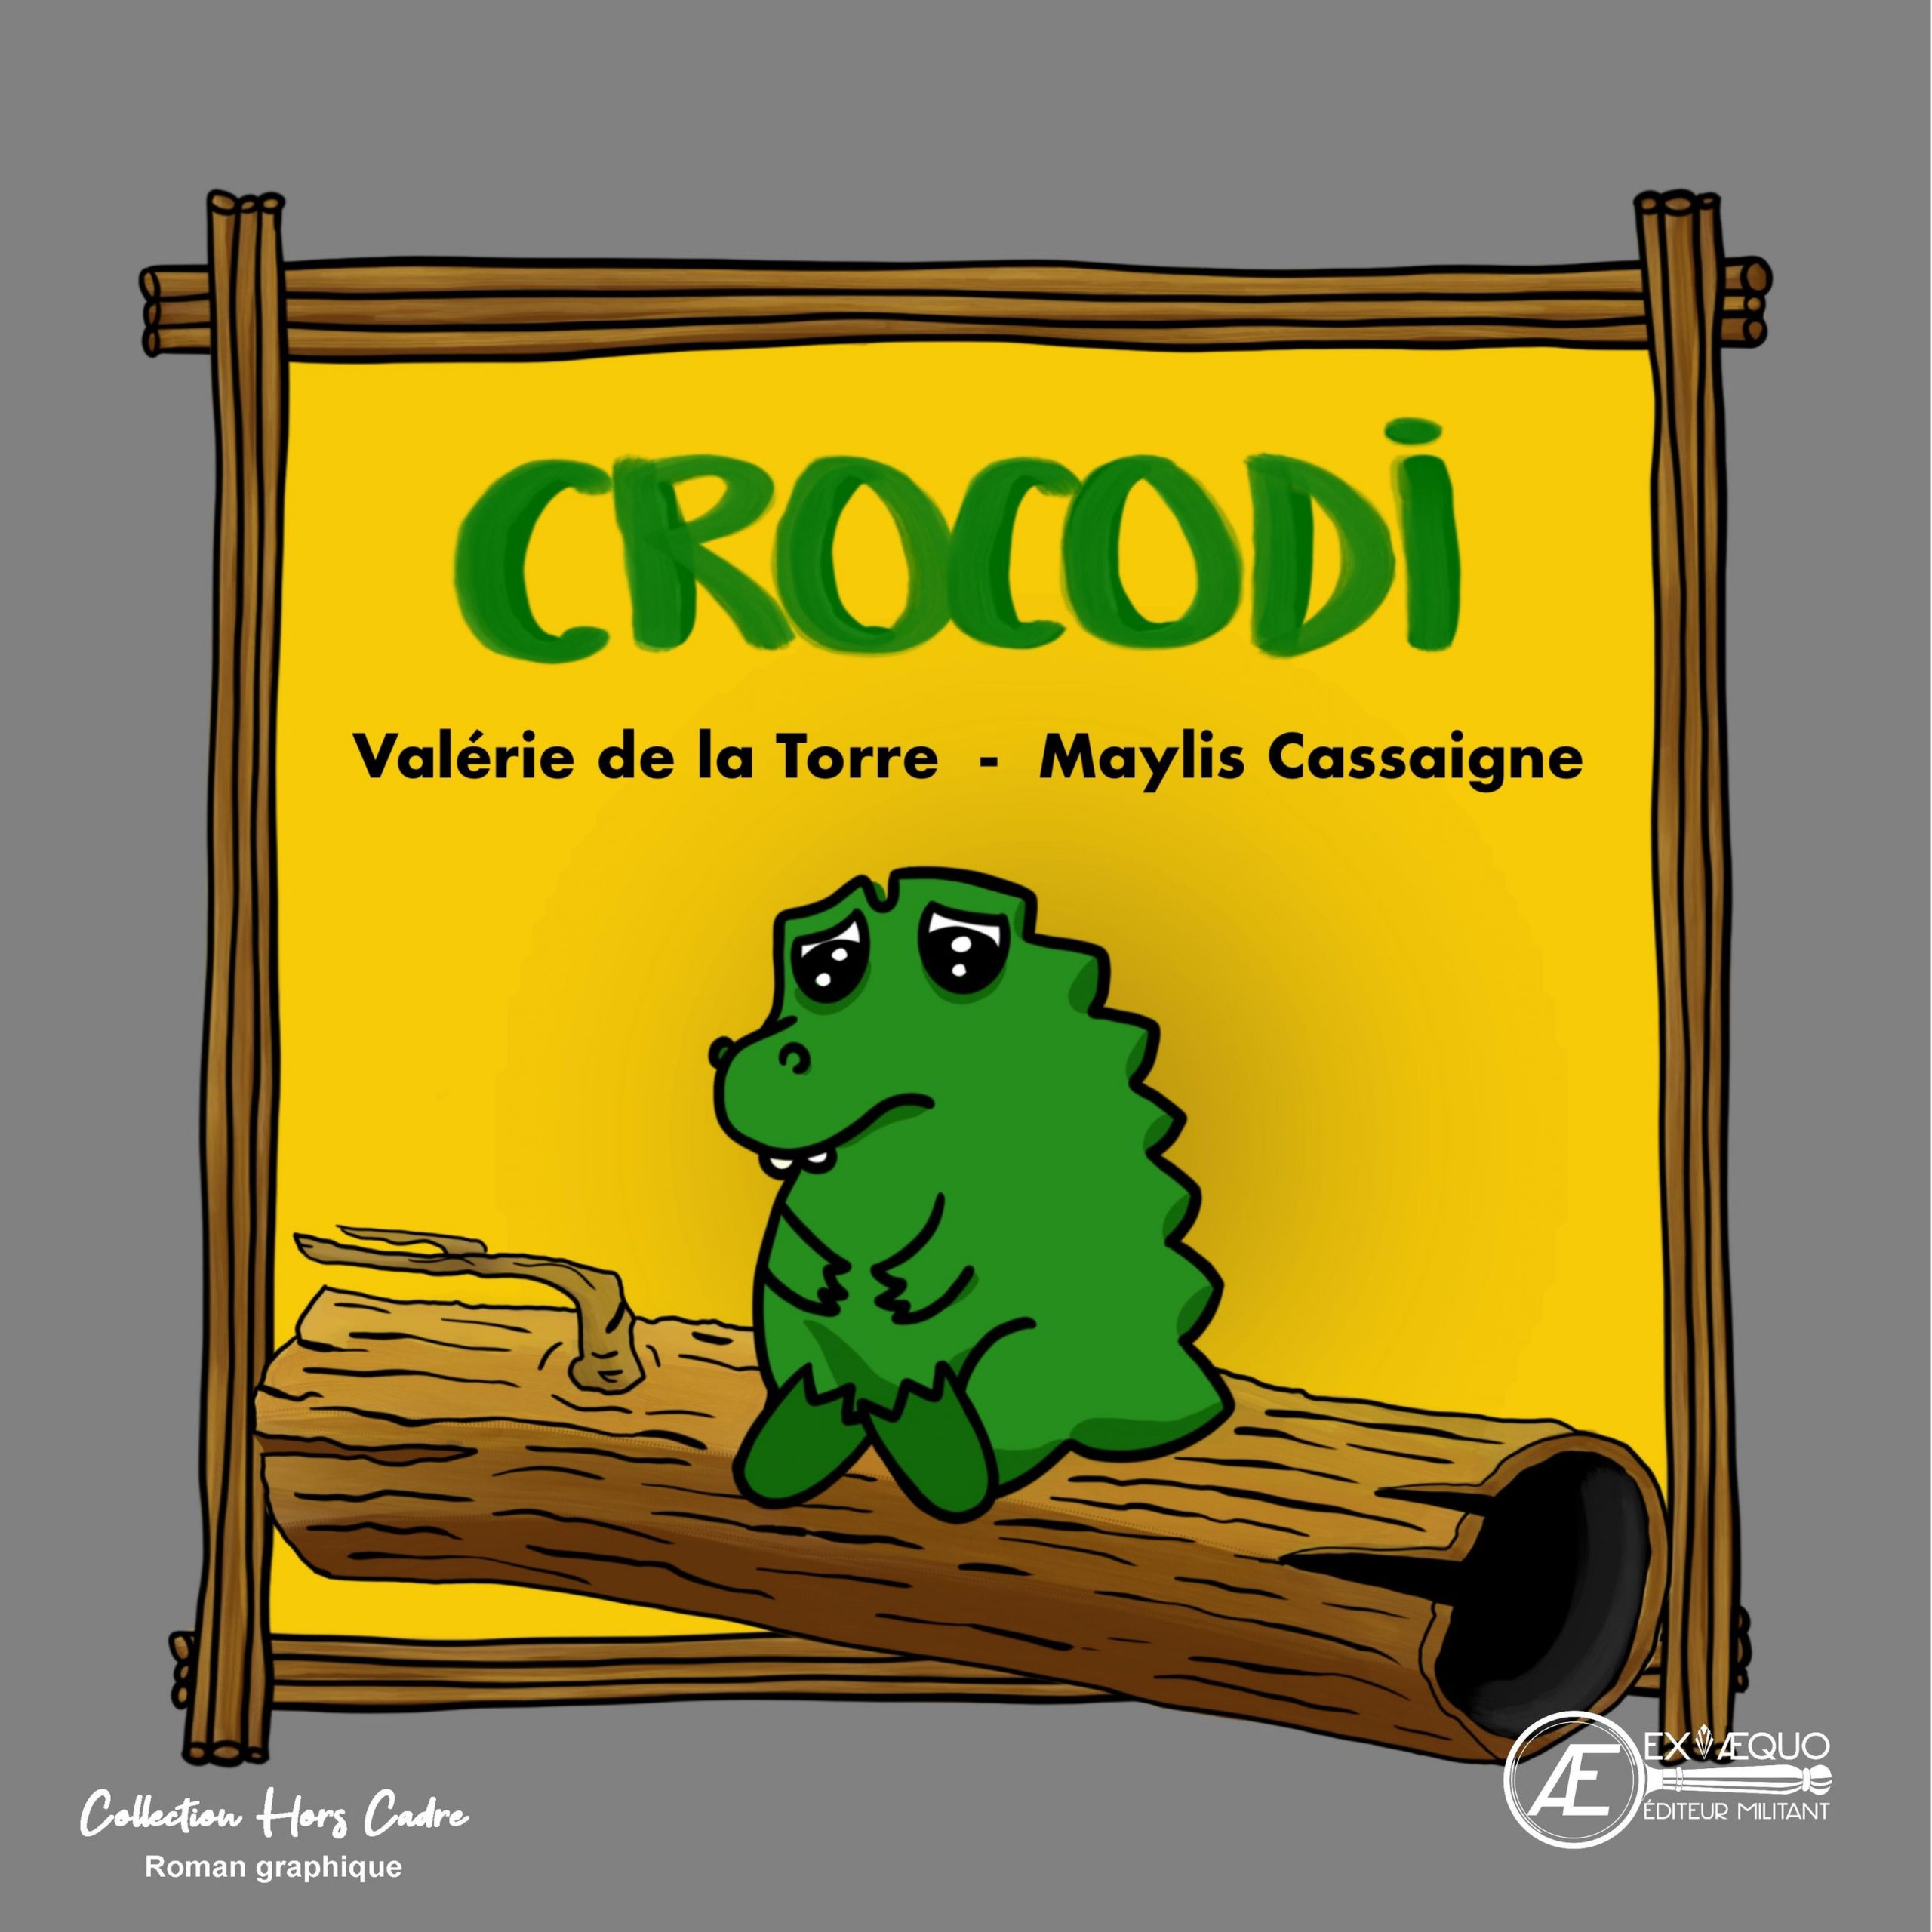 You are currently viewing Crocodi, de Valérie de la Torre & Marylis